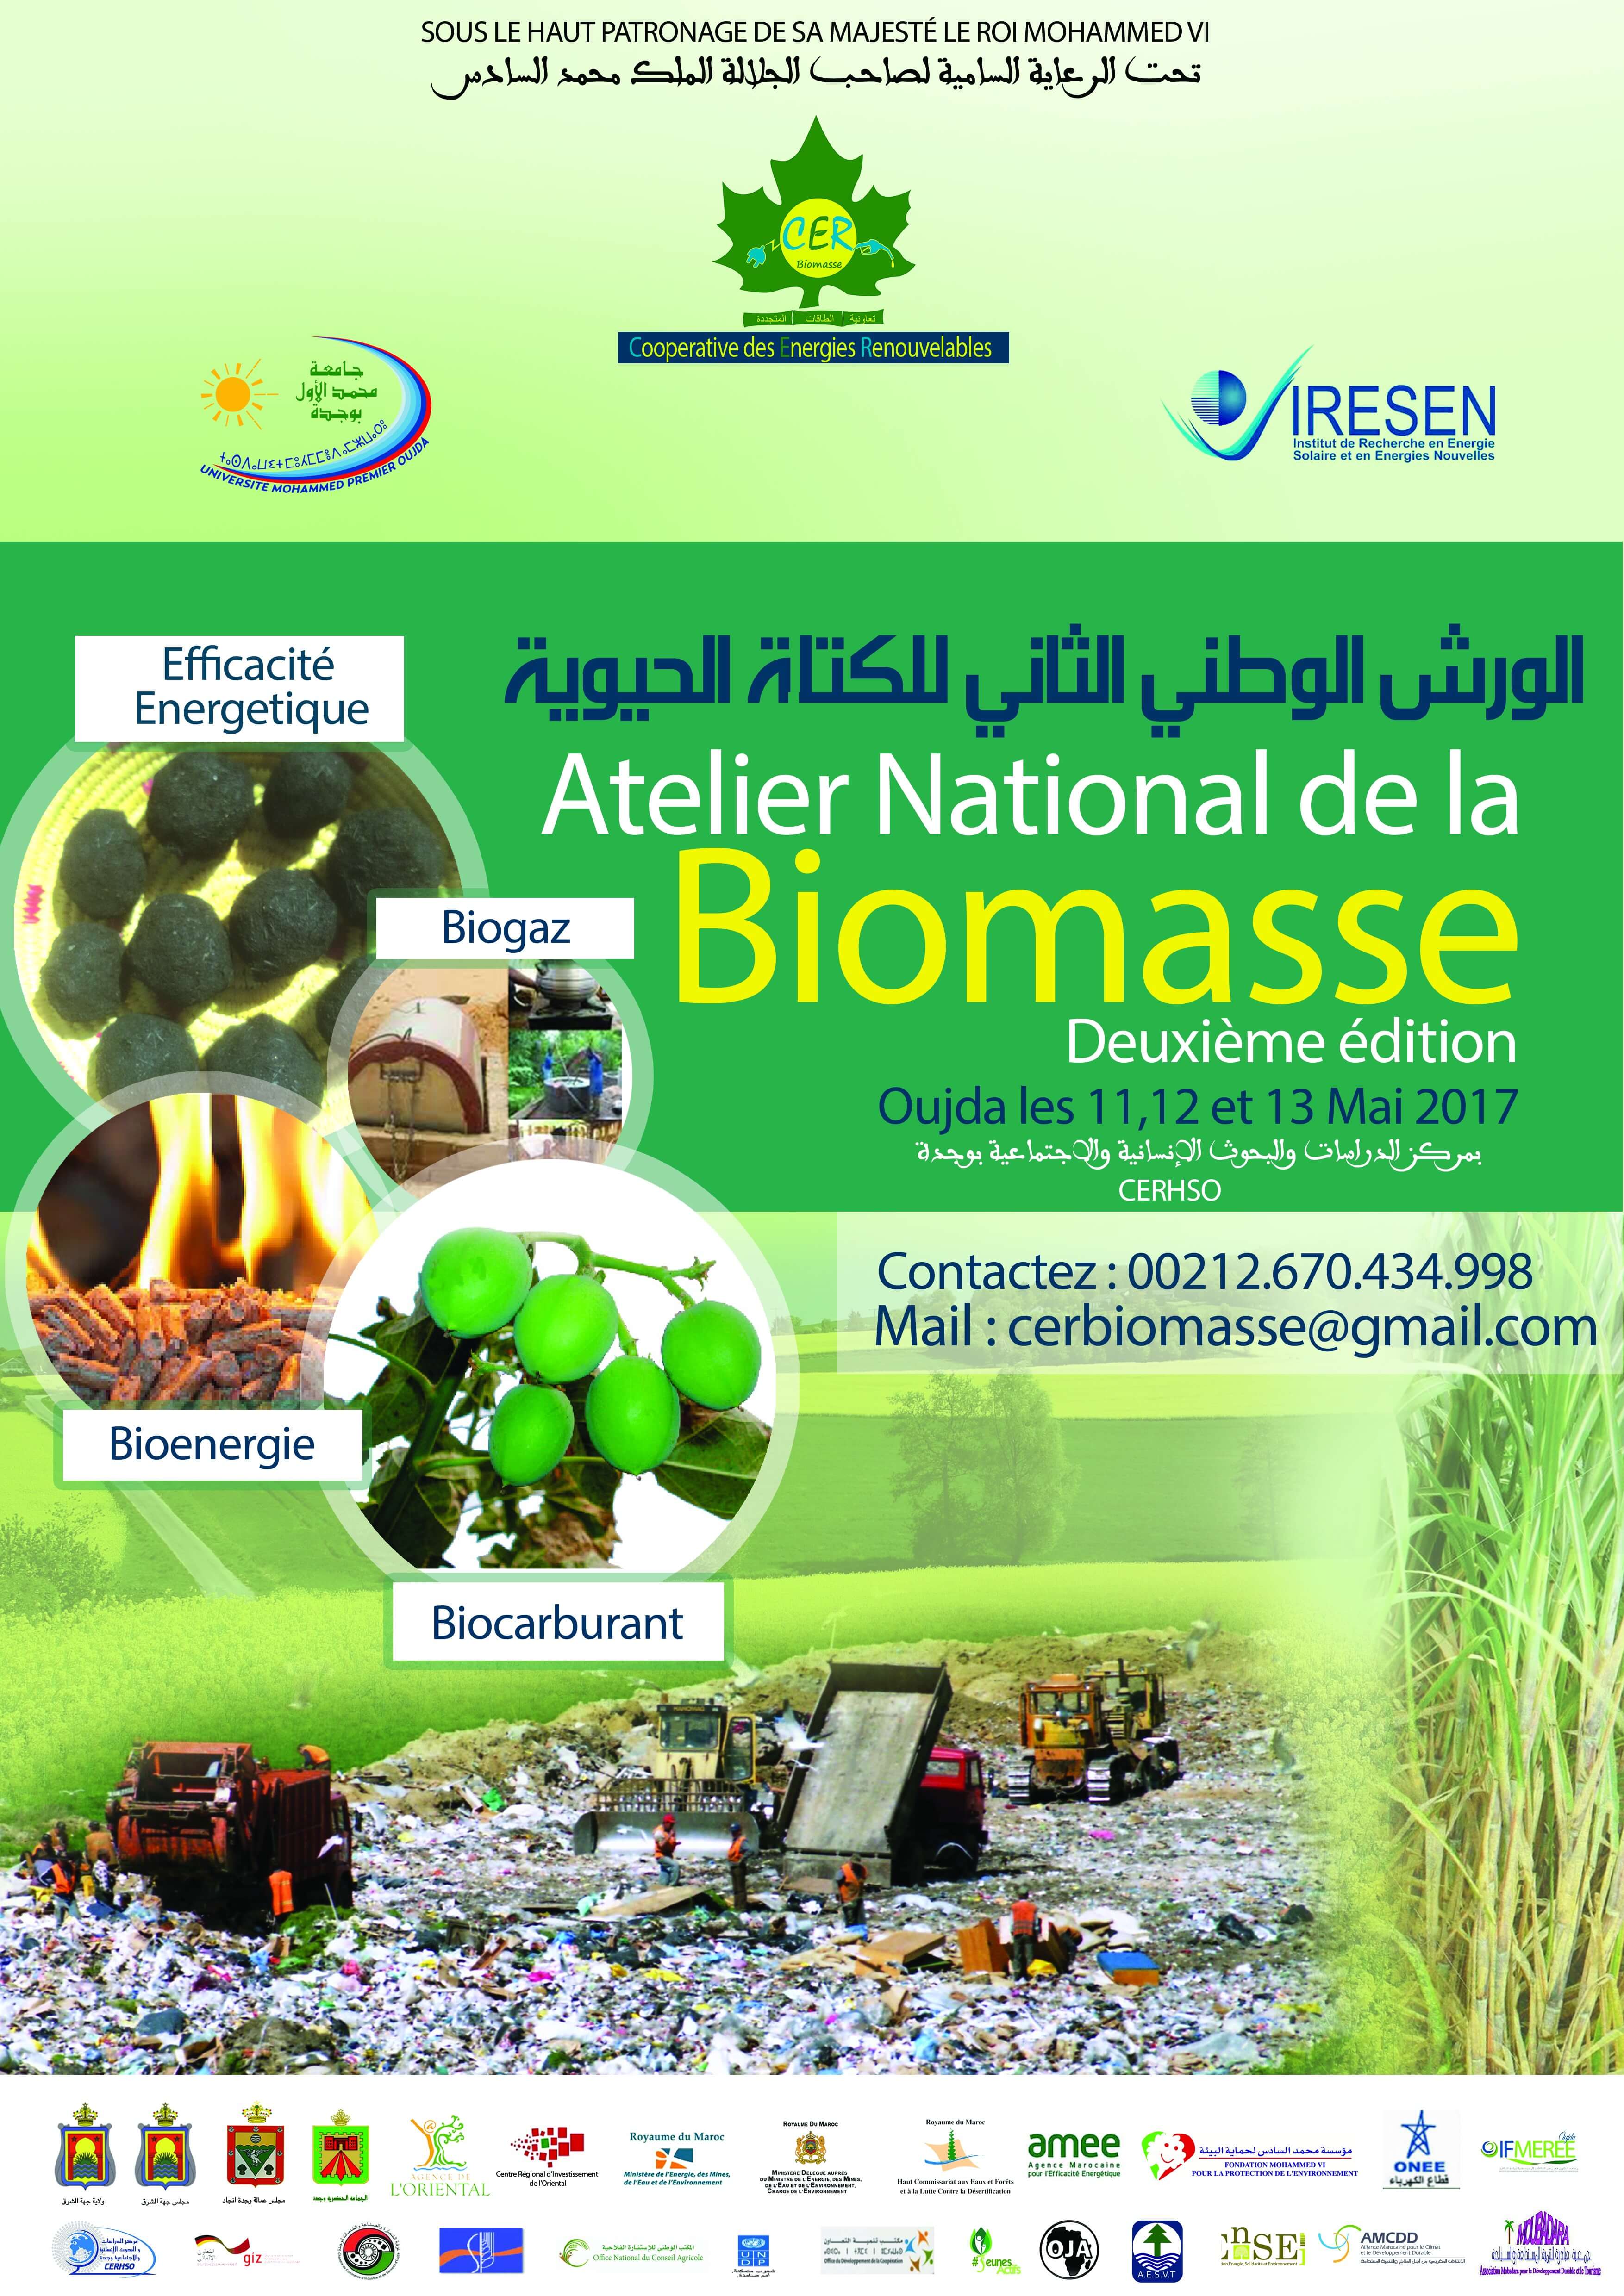 Atelier National de la Biomasse Deuxième édition